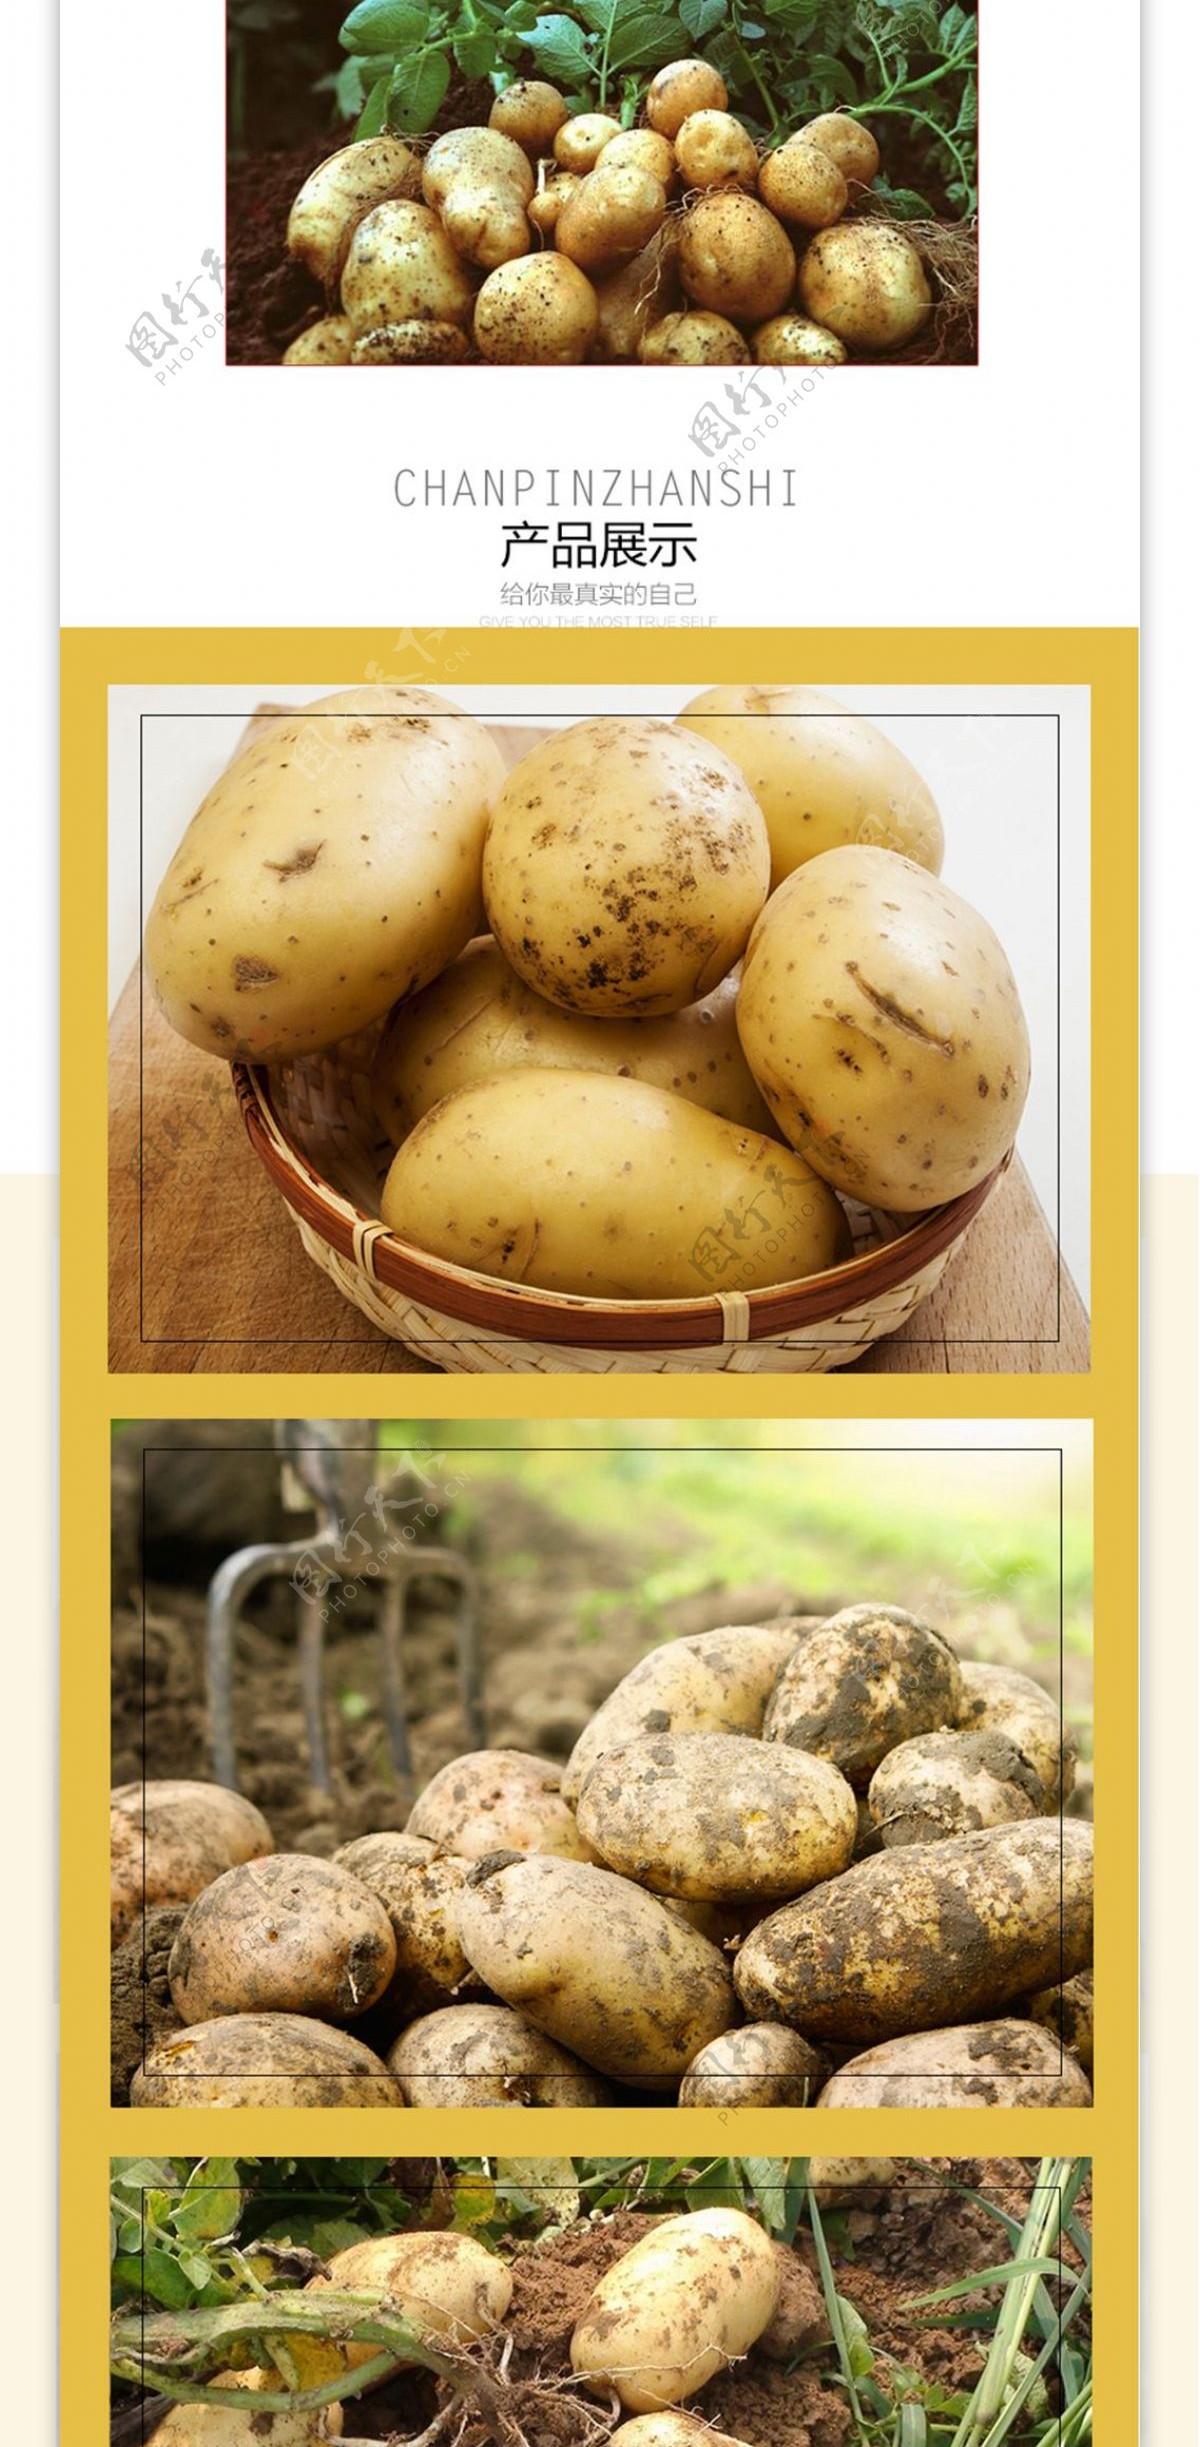 淘宝农产品土豆详情页